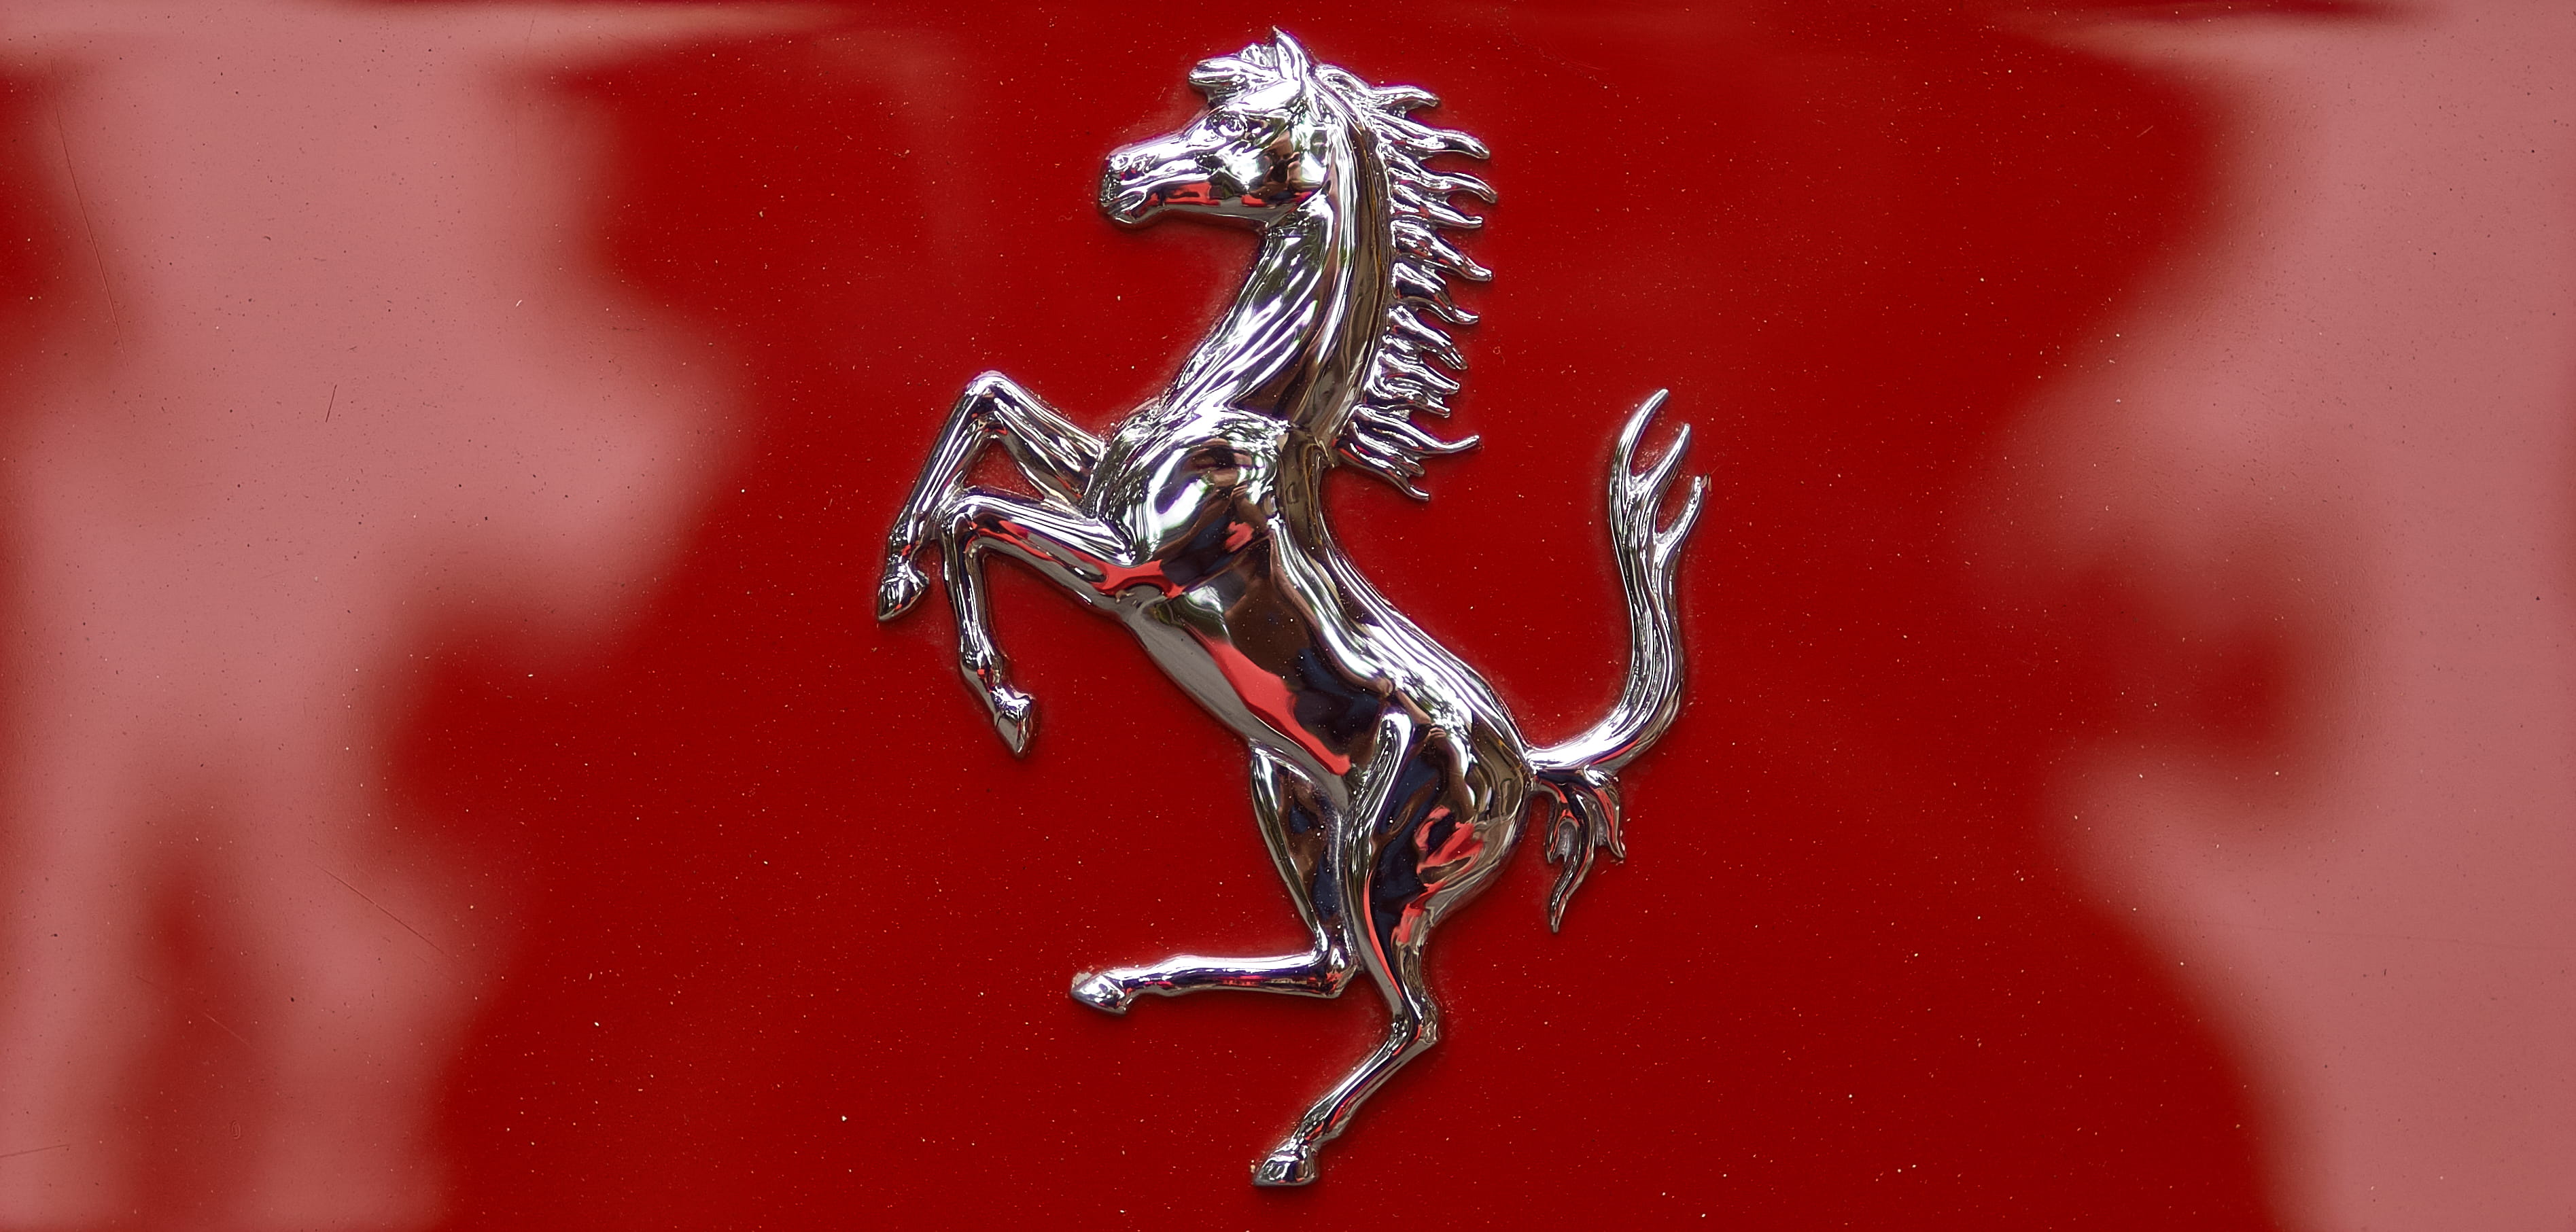 Free download | HD wallpaper: ferrari logo, car, horse, red, close-up ...